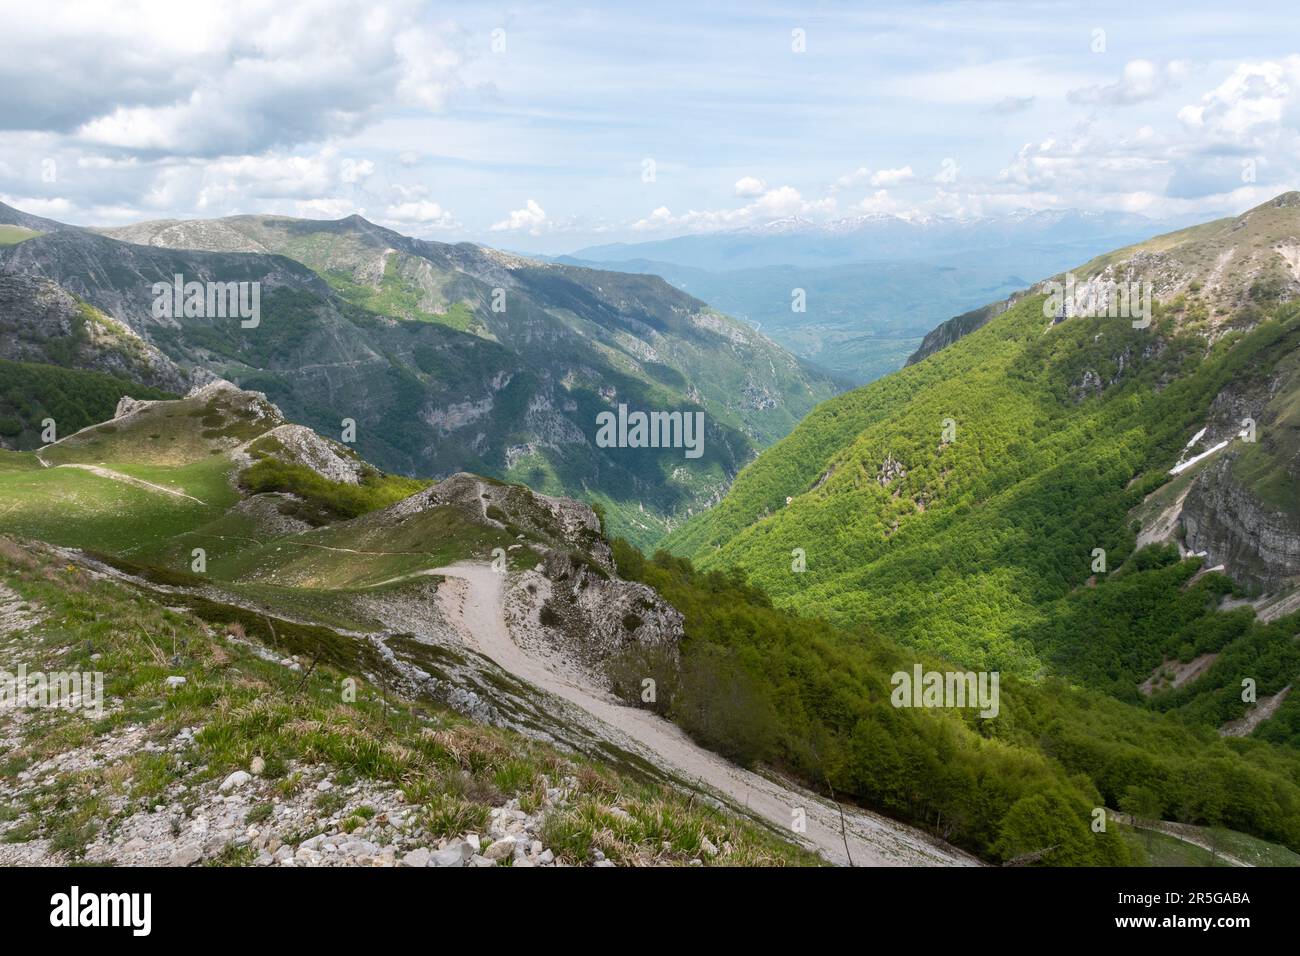 Paysage de montagne paysage dans la chaîne Apennine près de Monte Terminillo en mai, Italie centrale, Europe Banque D'Images